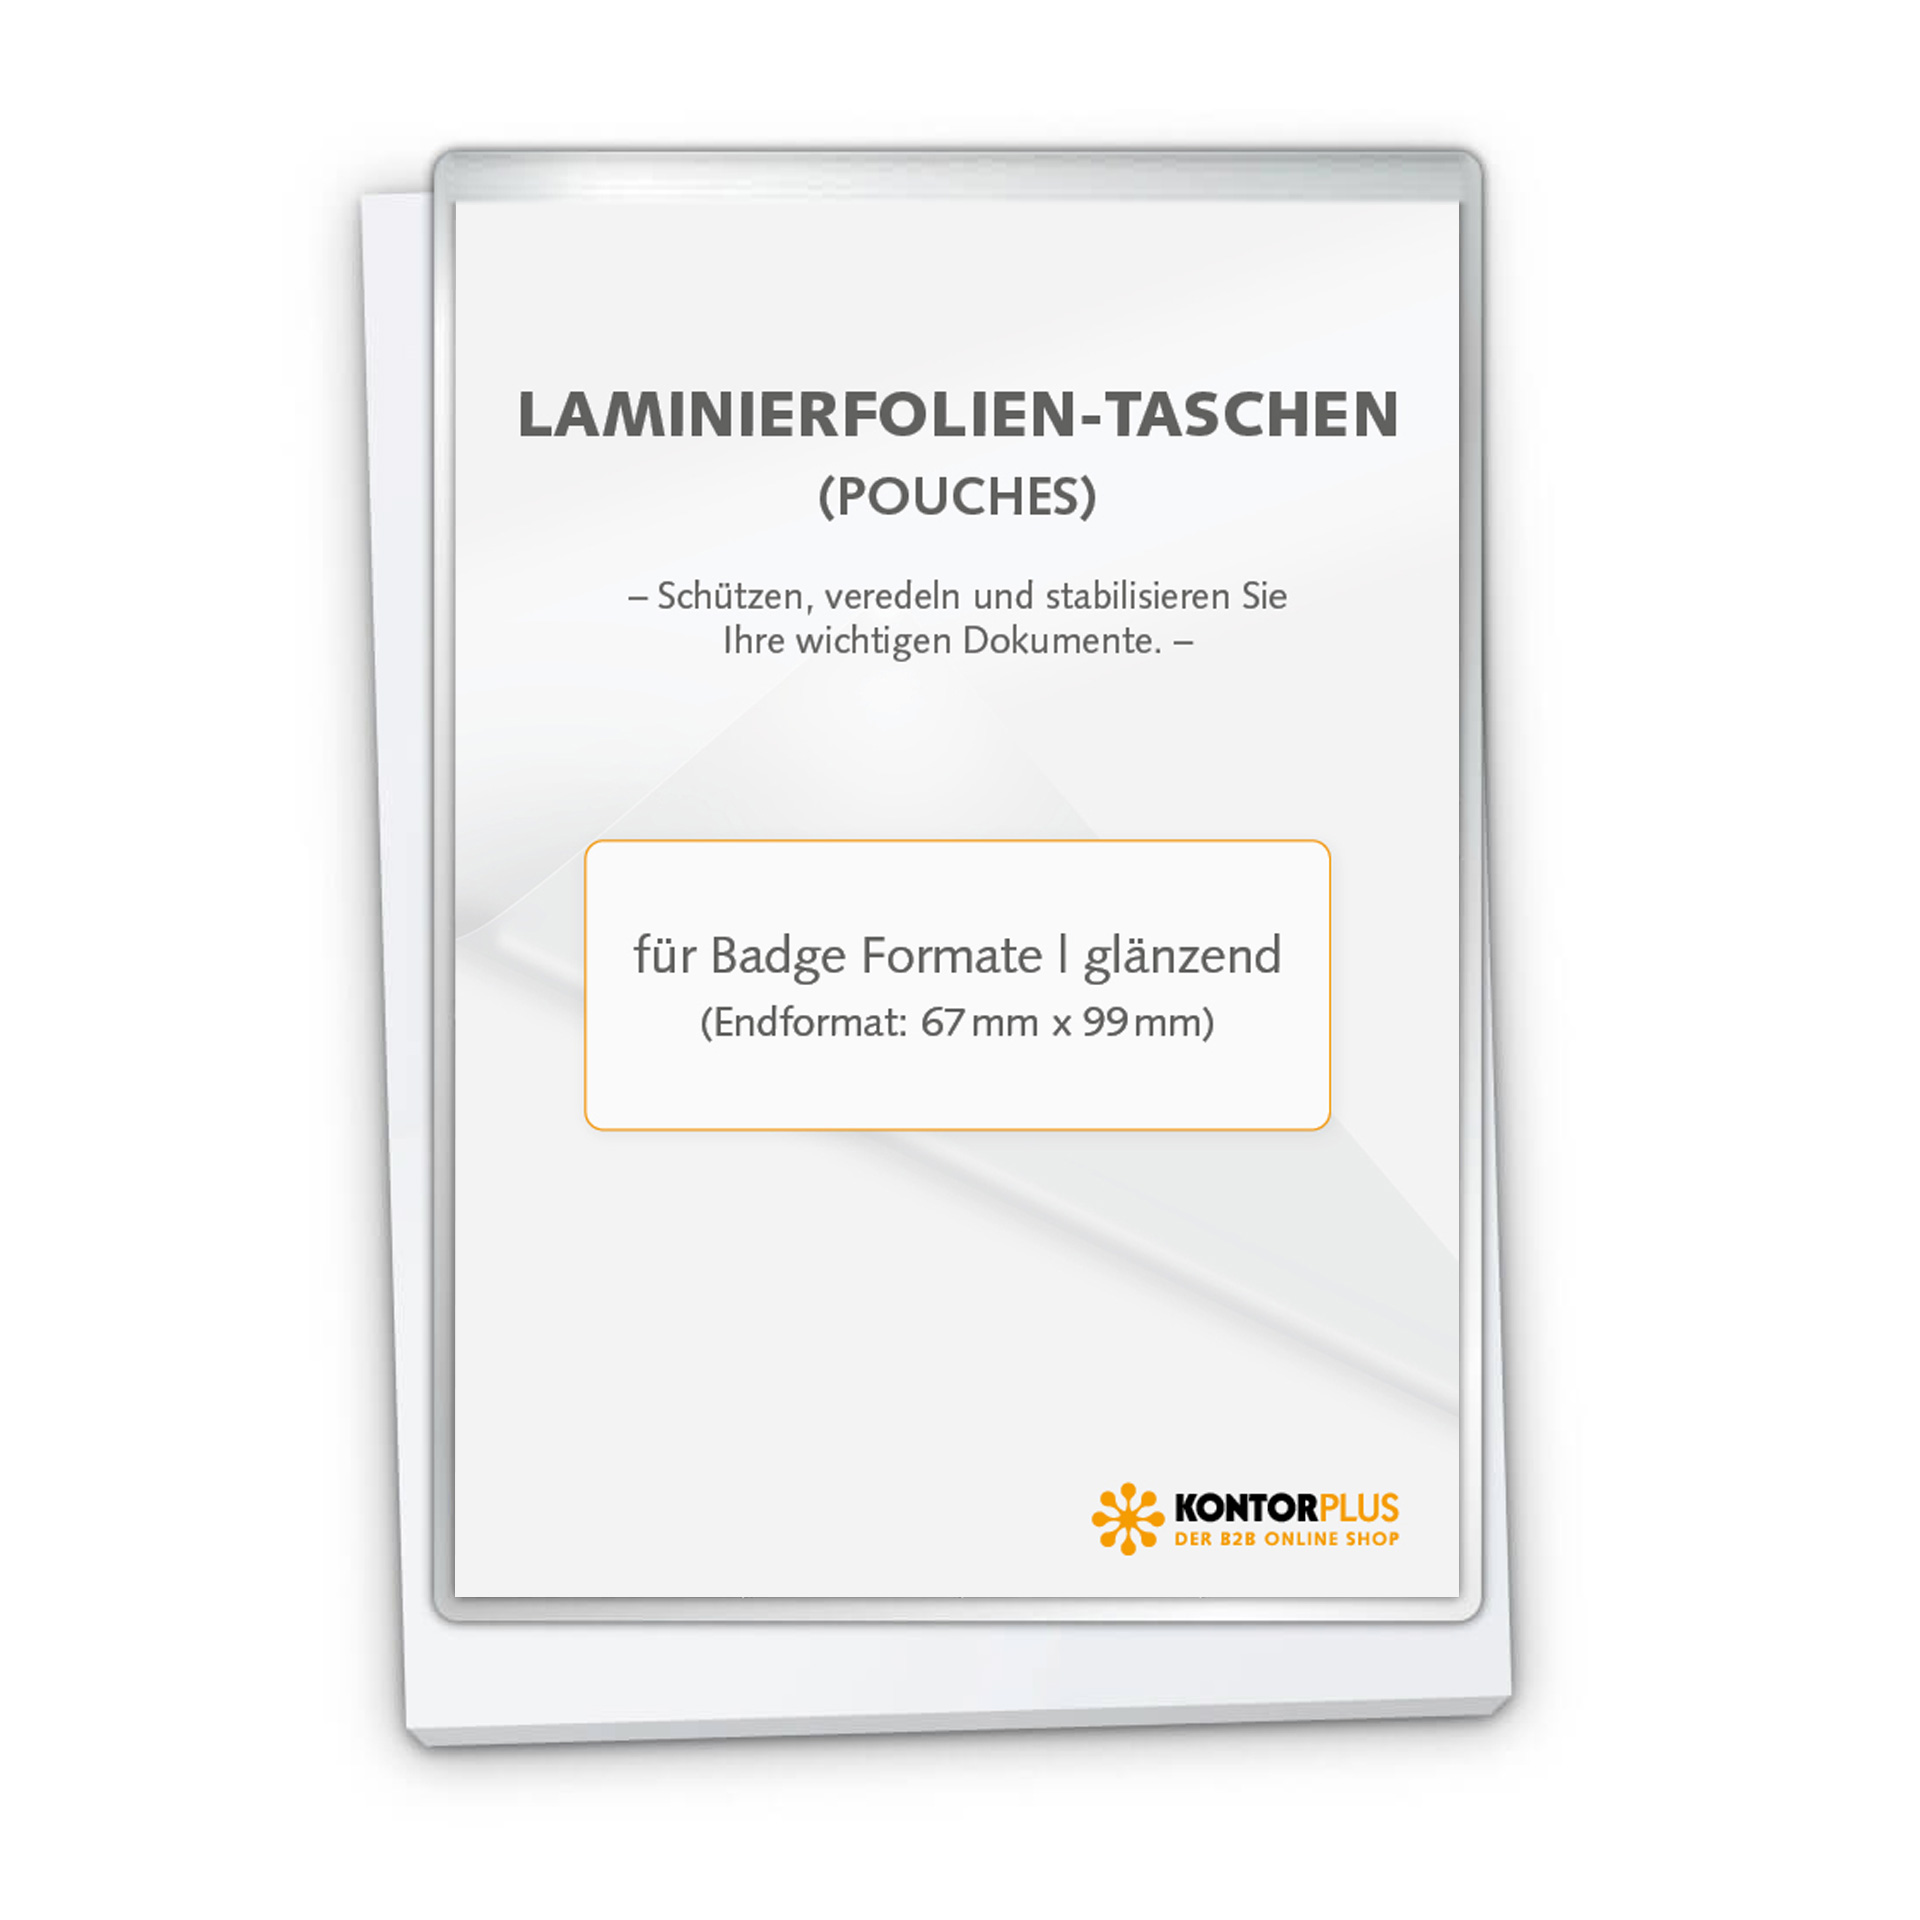 Laminierfolien CardPouch für Badge Formate | 200 Stück pro VE